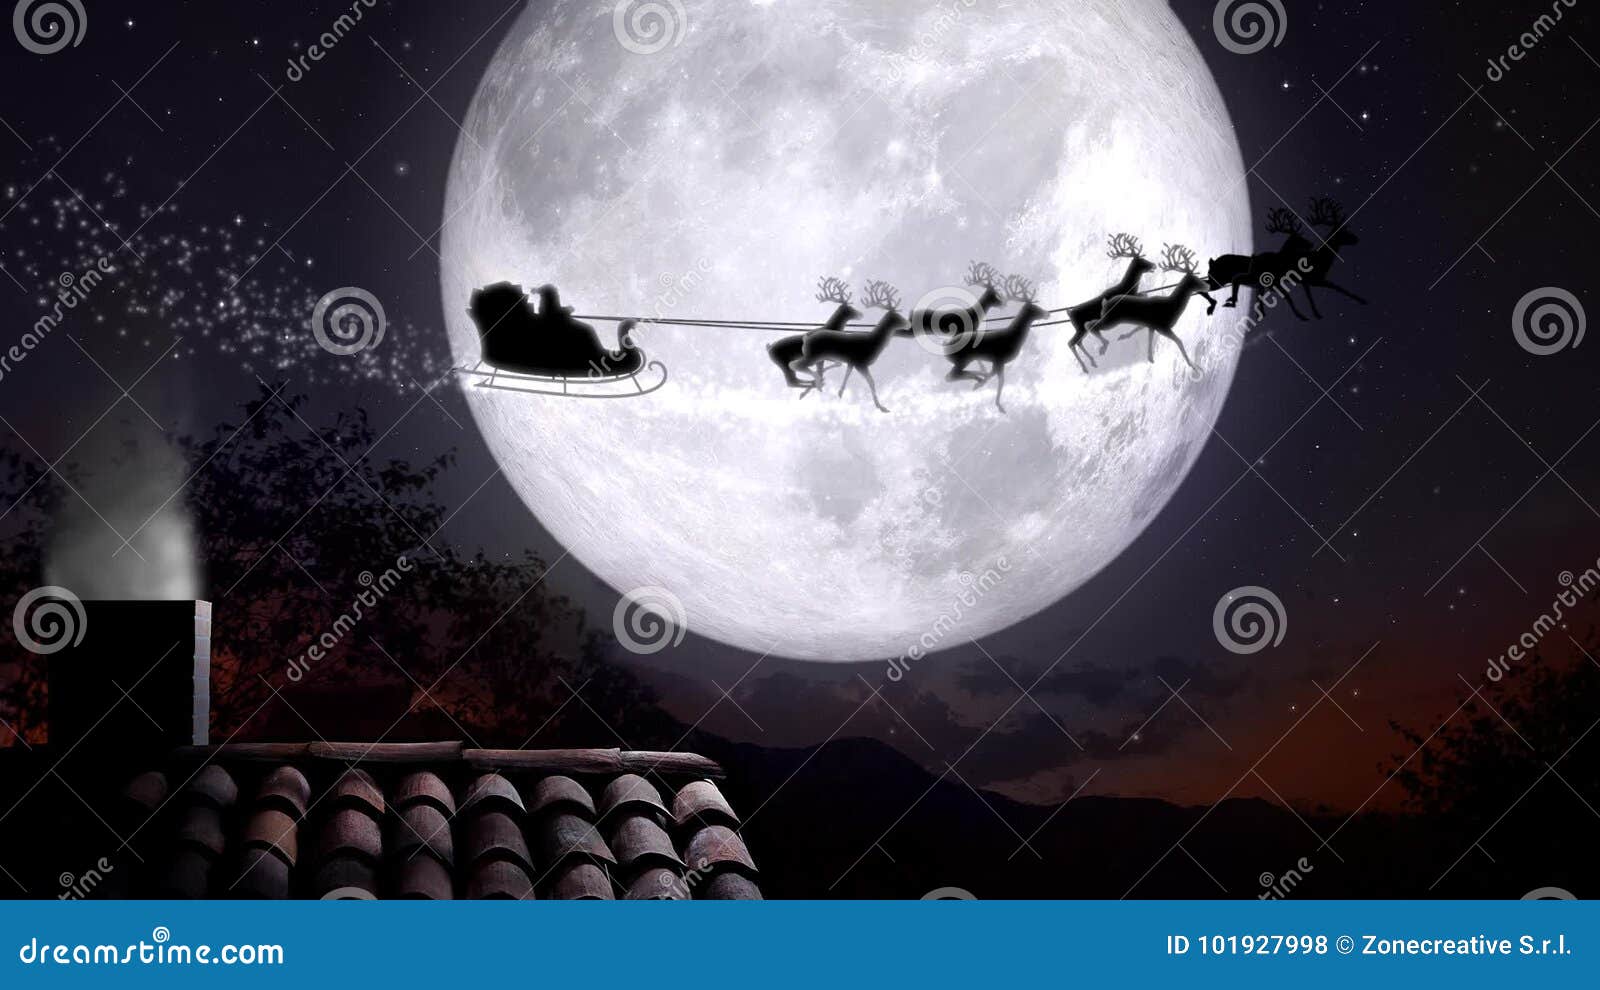 20 Santa Claus servilletas luna llena chimenea navidad 1 envase OVP Santa PD